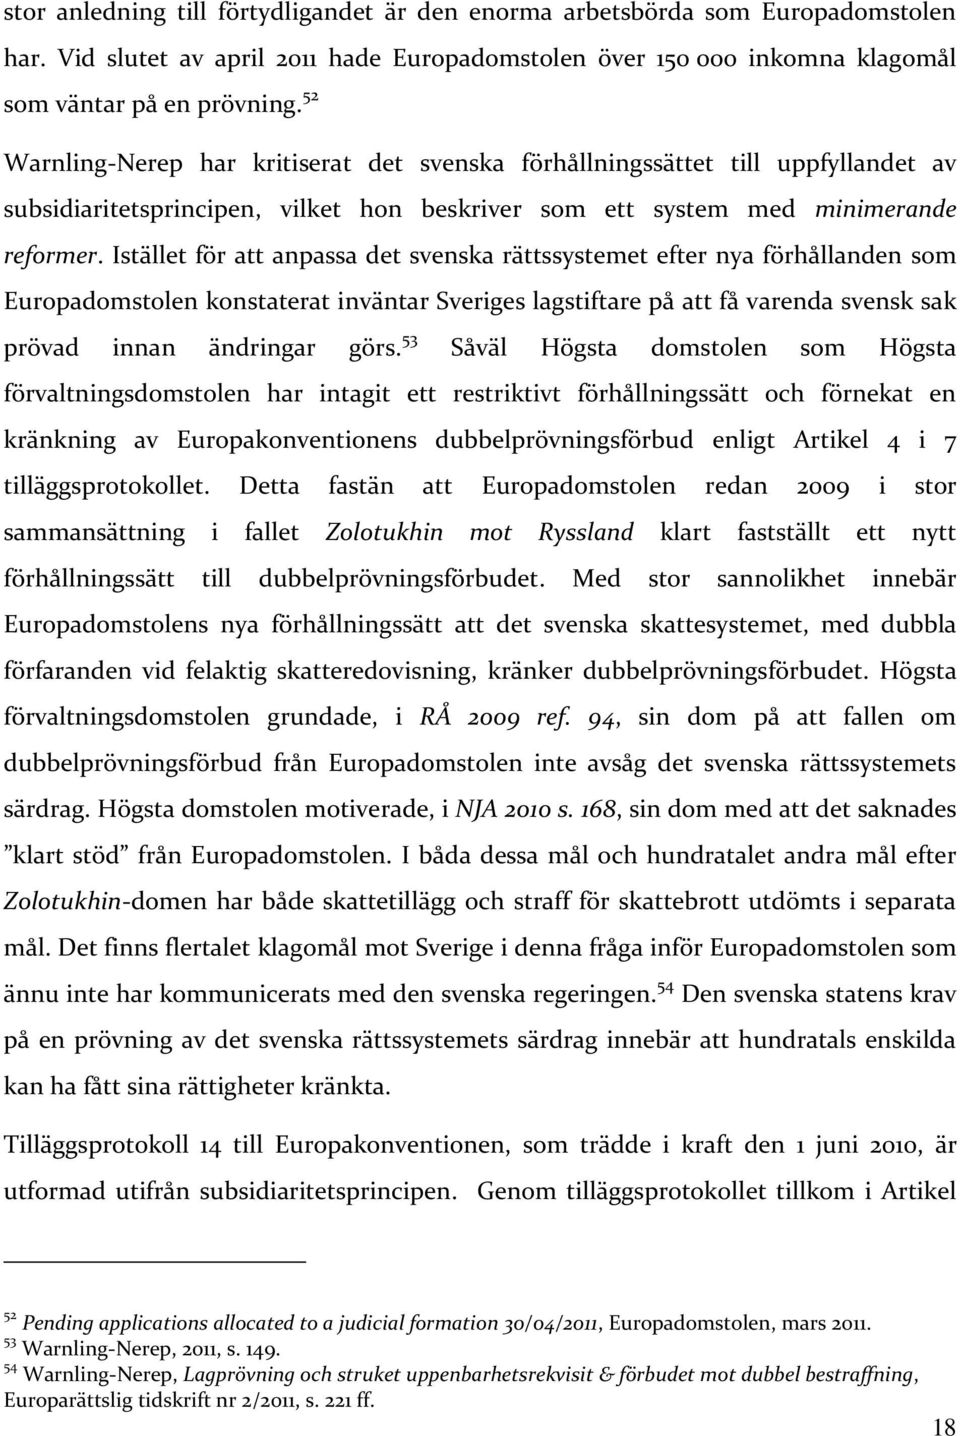 Istället för att anpassa det svenska rättssystemet efter nya förhållanden som Europadomstolen konstaterat inväntar Sveriges lagstiftare på att få varenda svensk sak prövad innan ändringar görs.